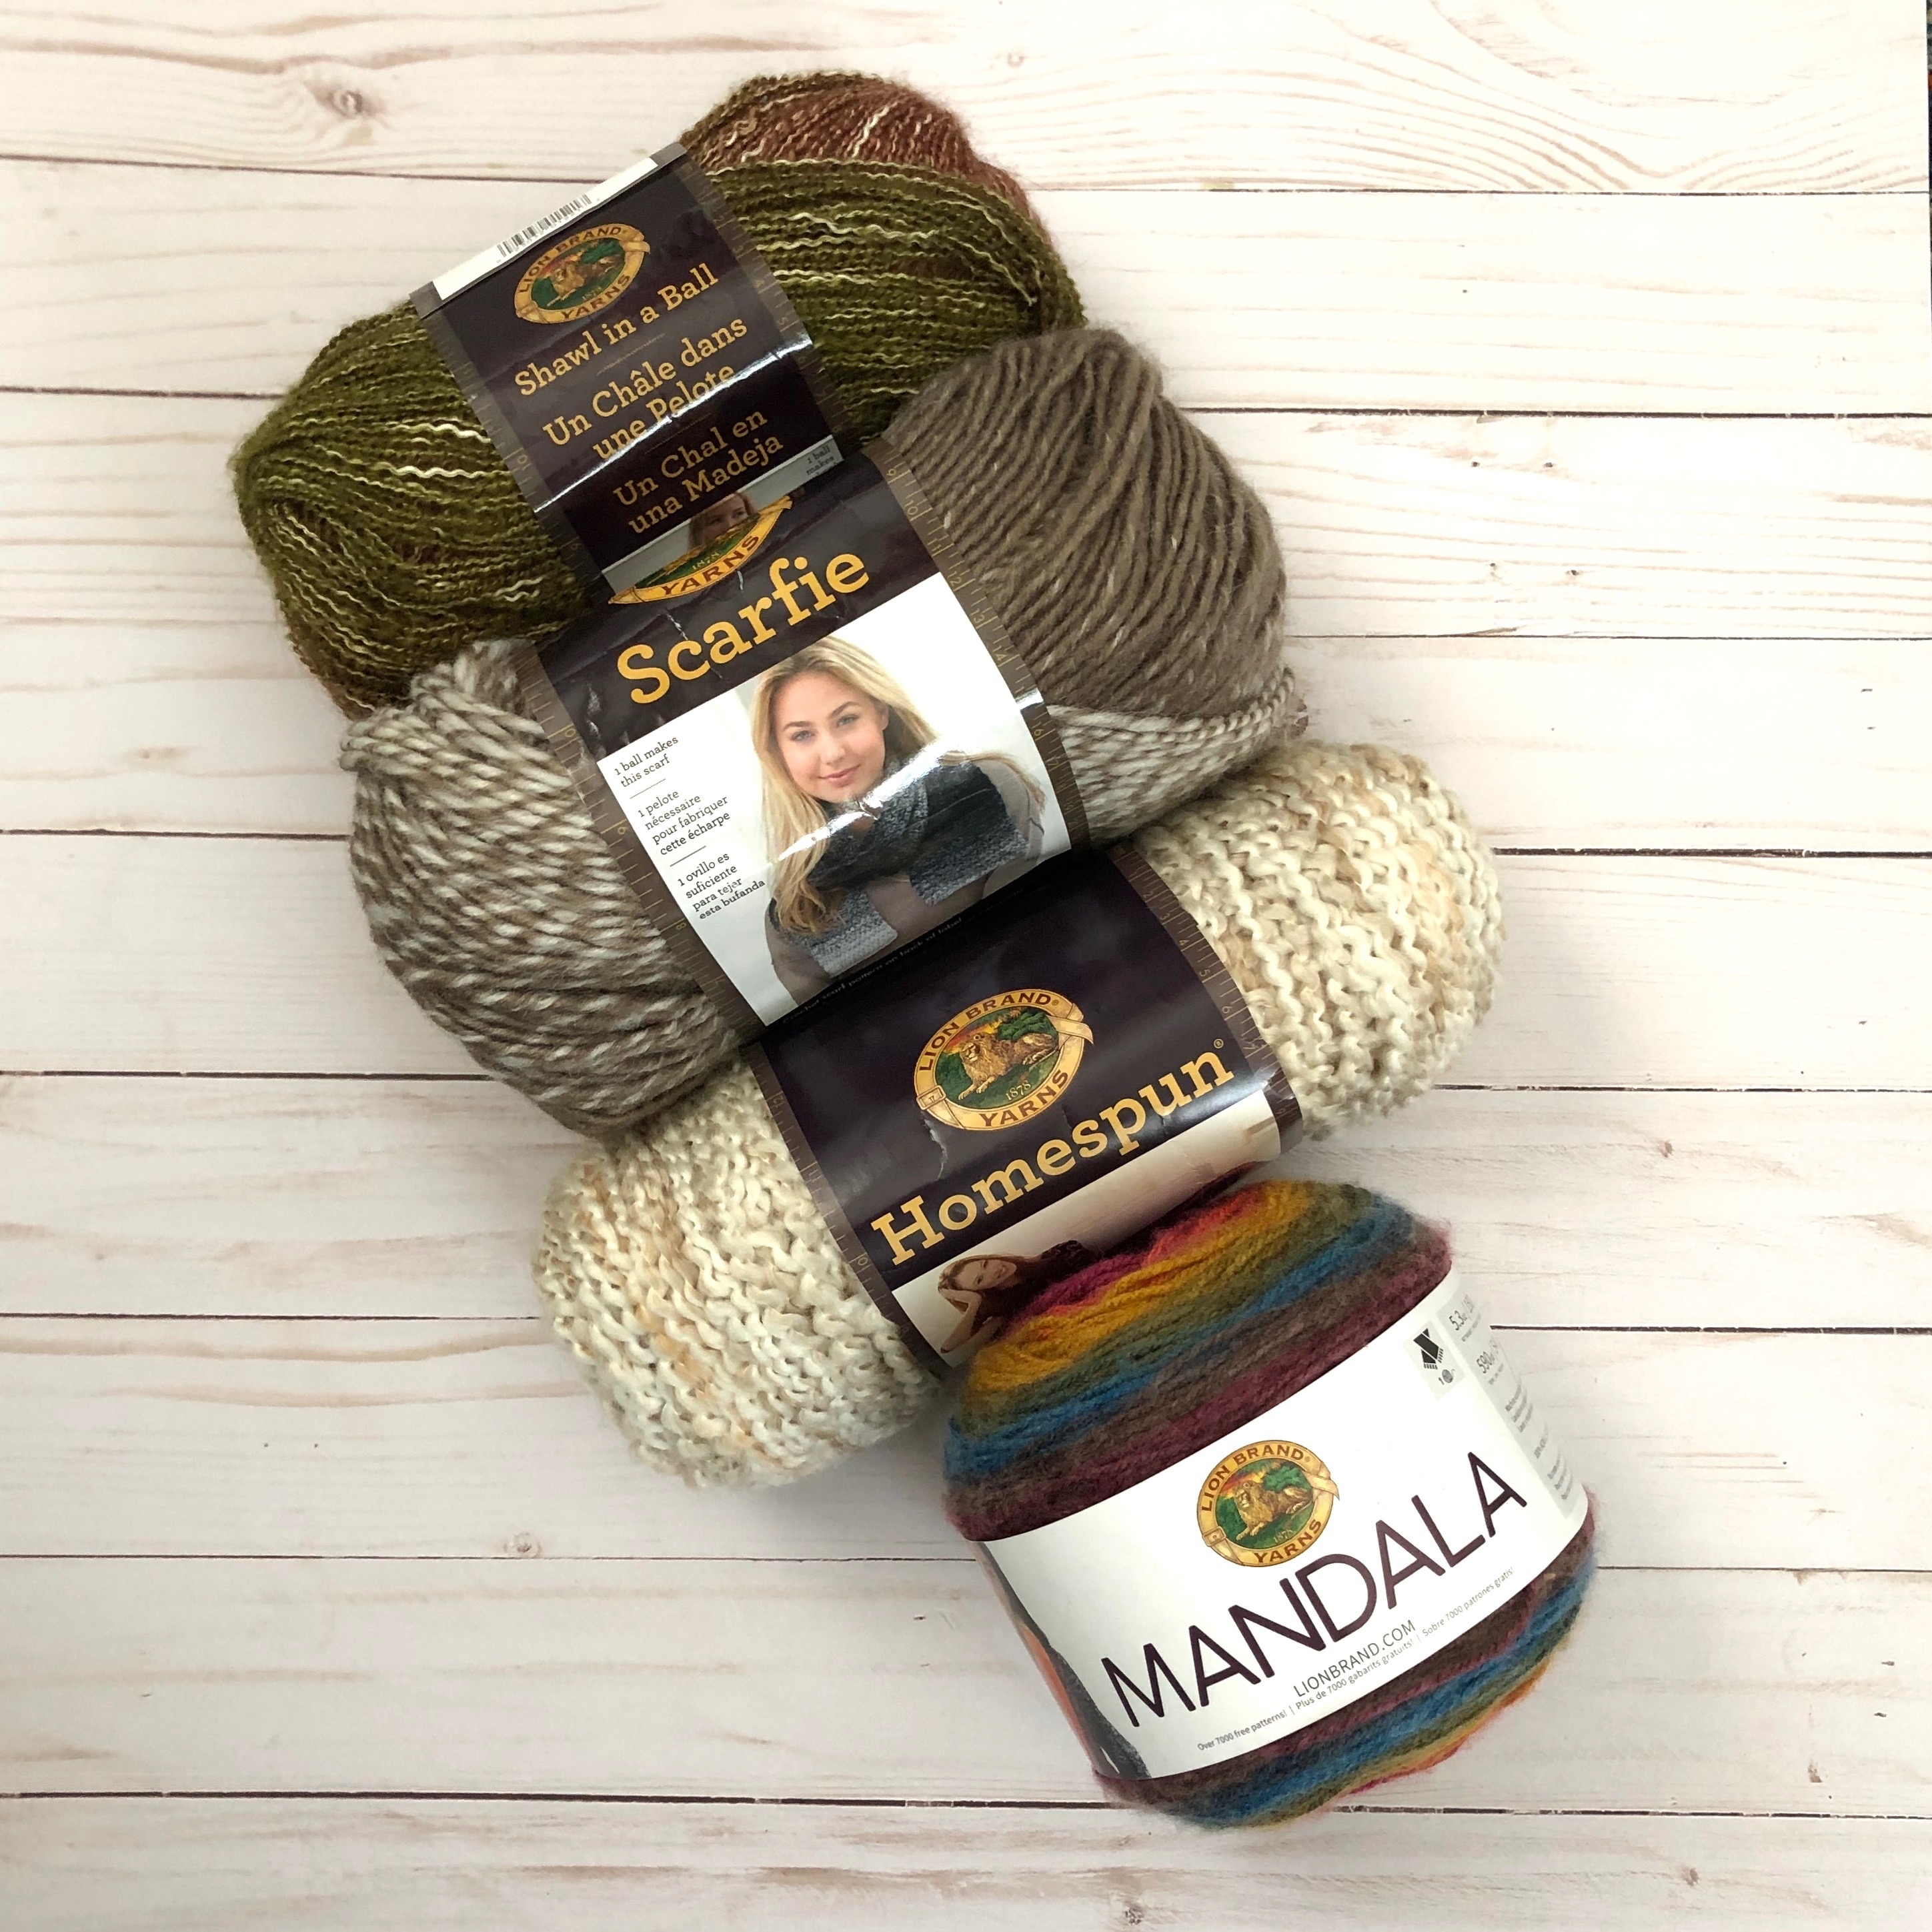 4 Skein Yarn Prize Pack Giveaway Fandom Knitting Crochet